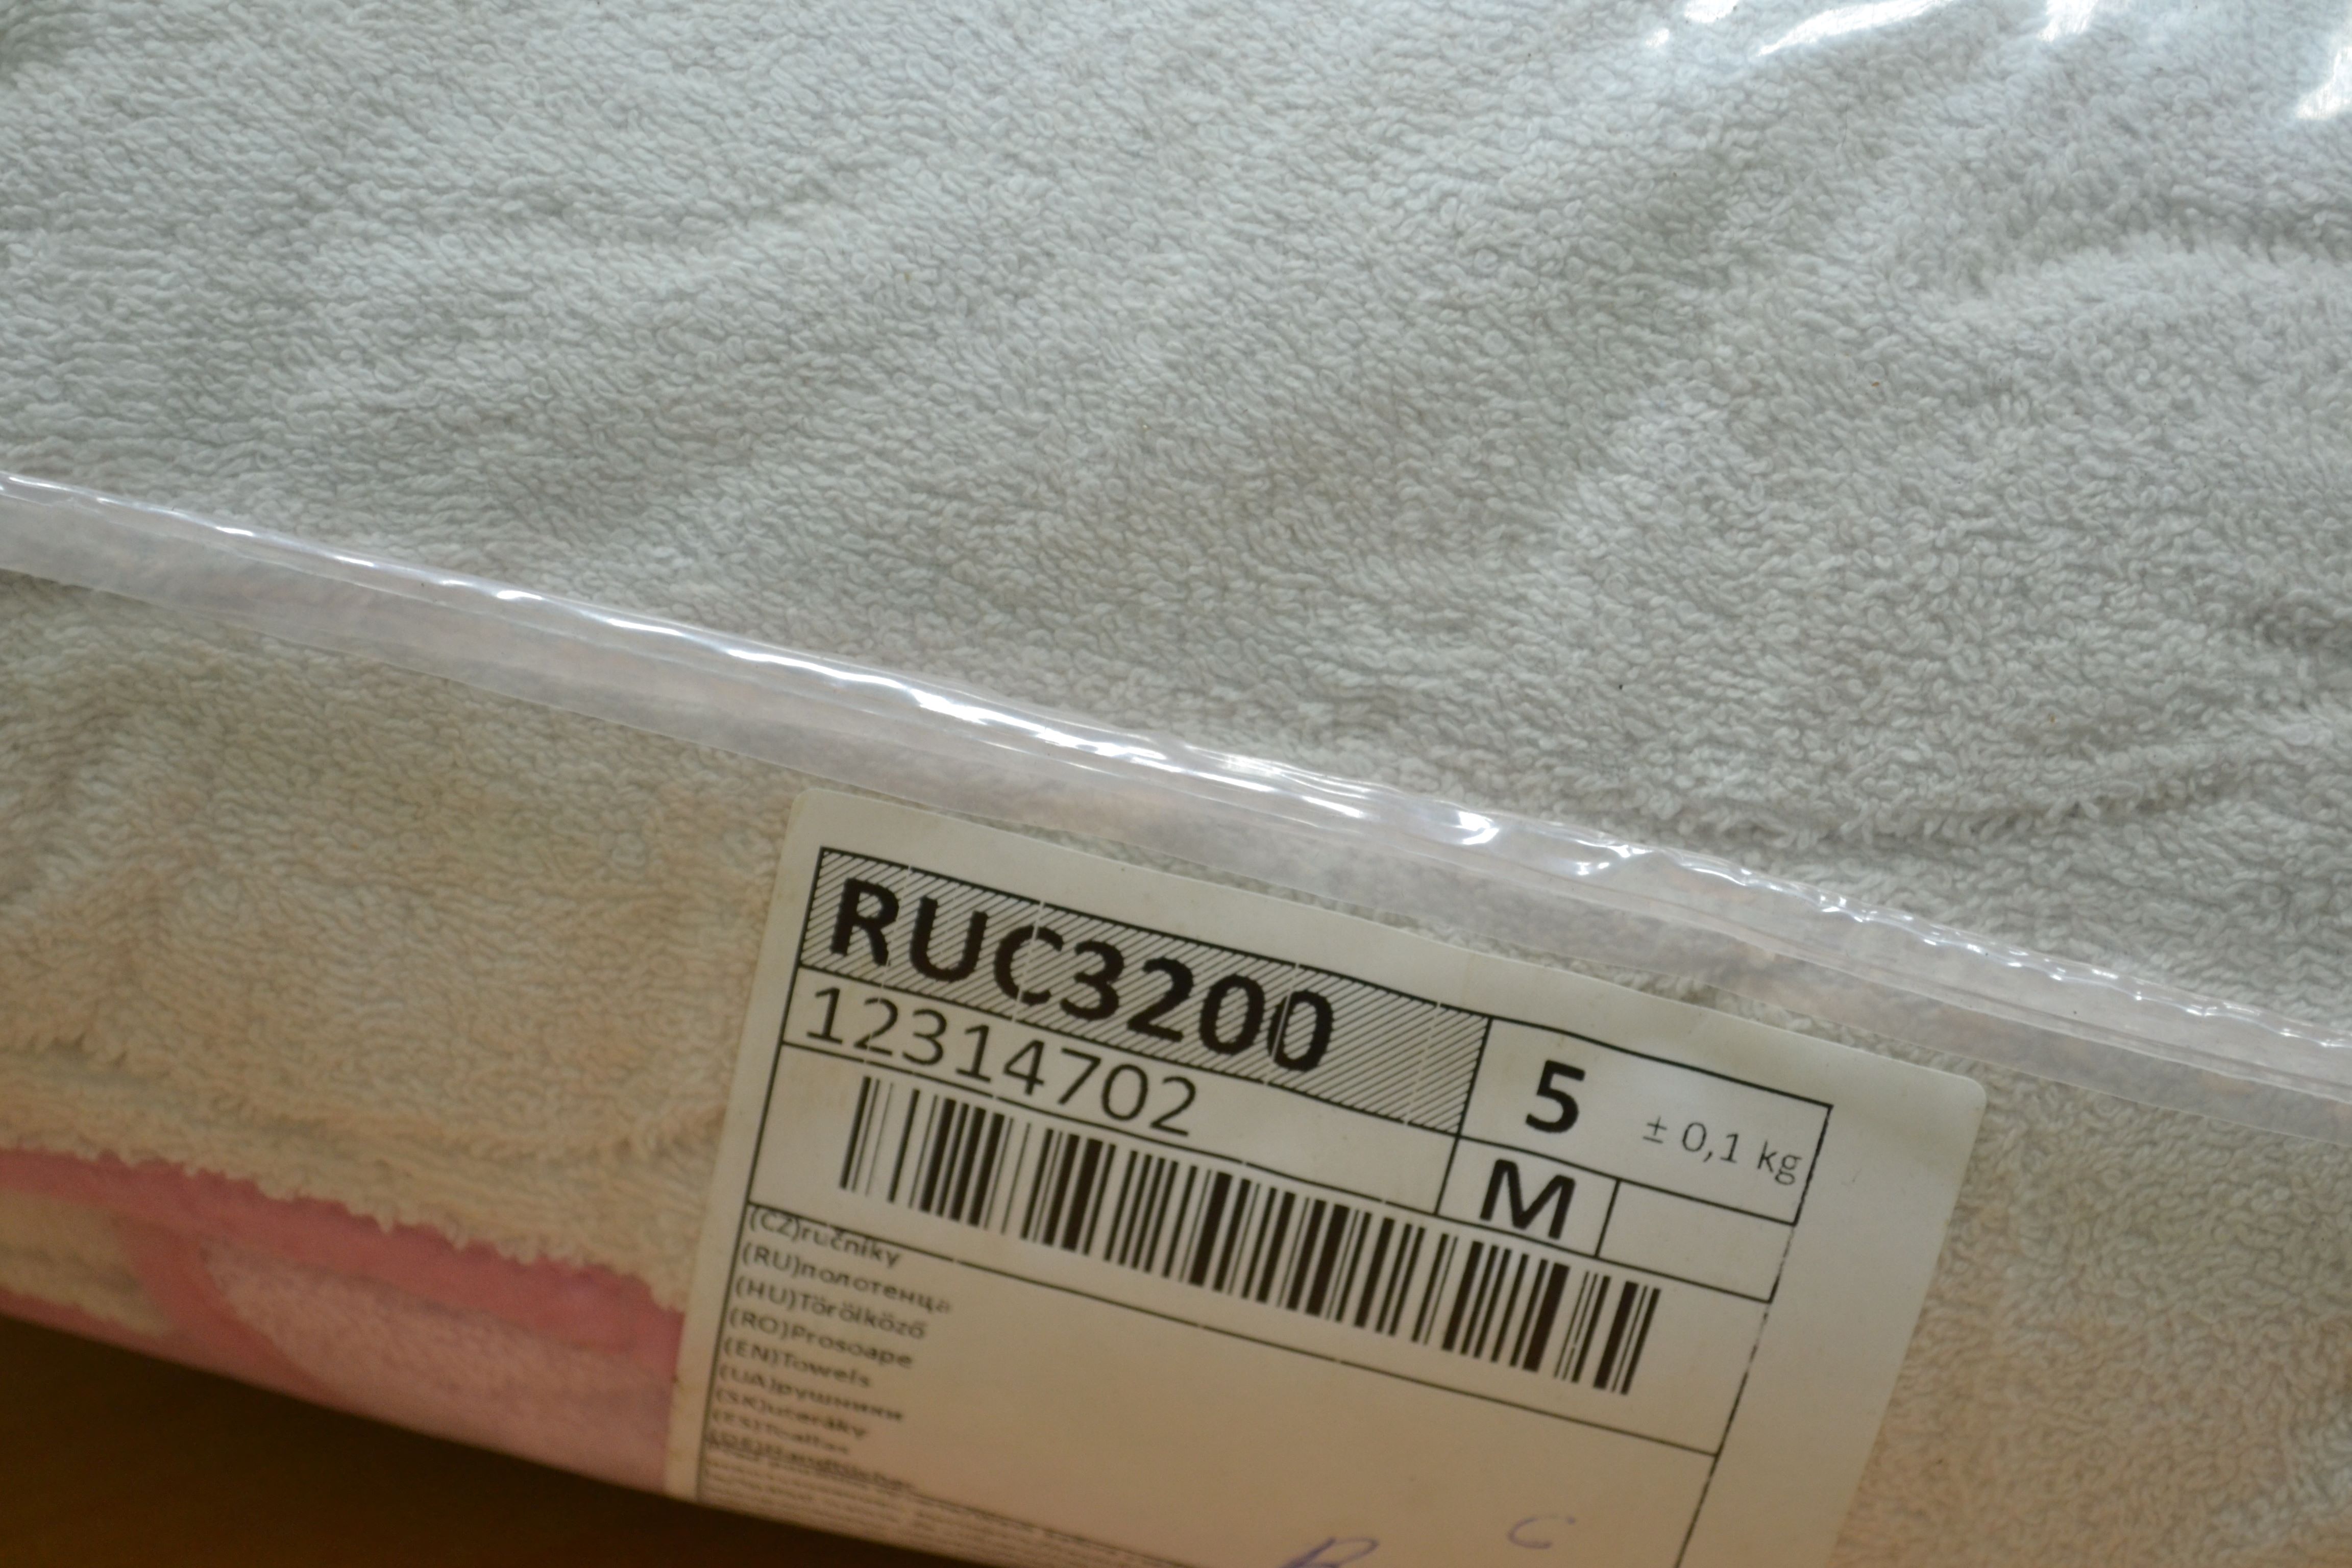 RUC3200 Полотенца; код мешка 12314702